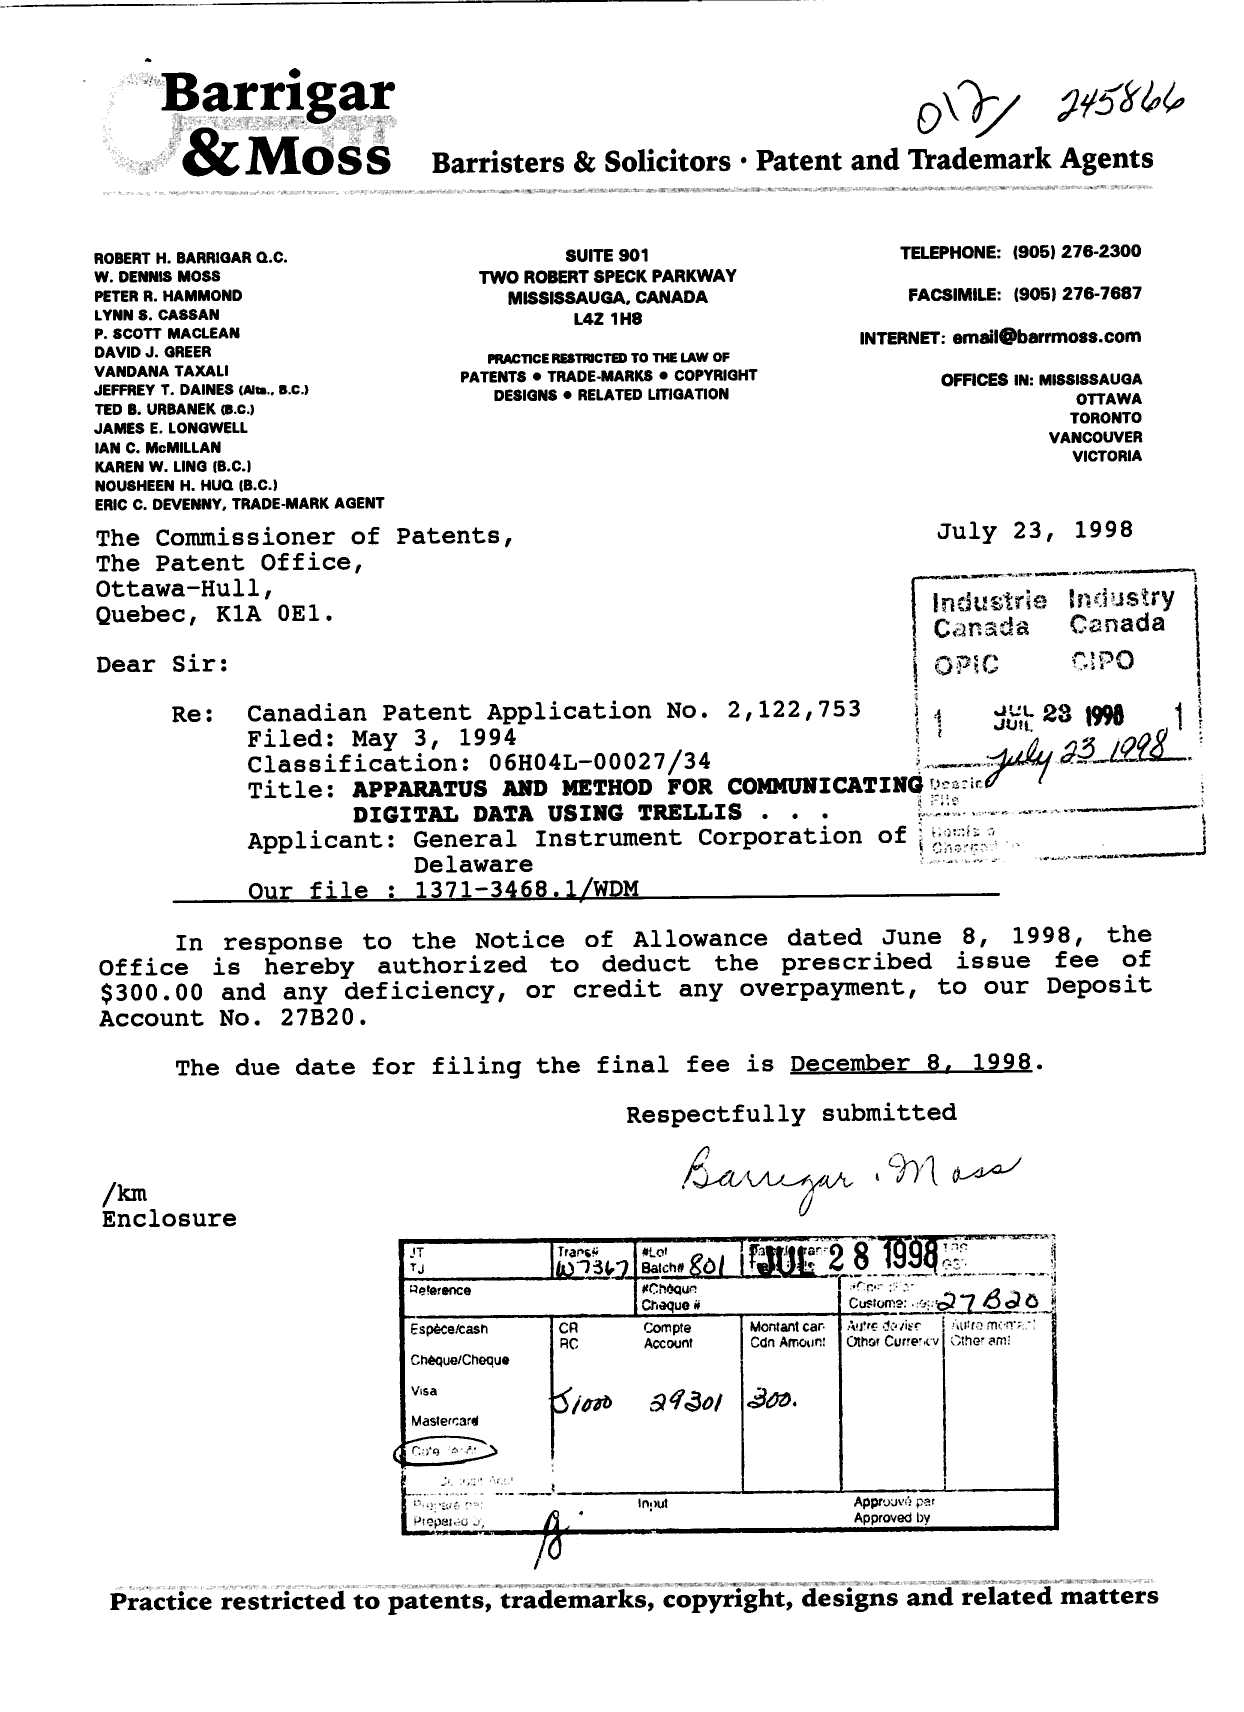 Document de brevet canadien 2122753. Correspondance 19980723. Image 1 de 1